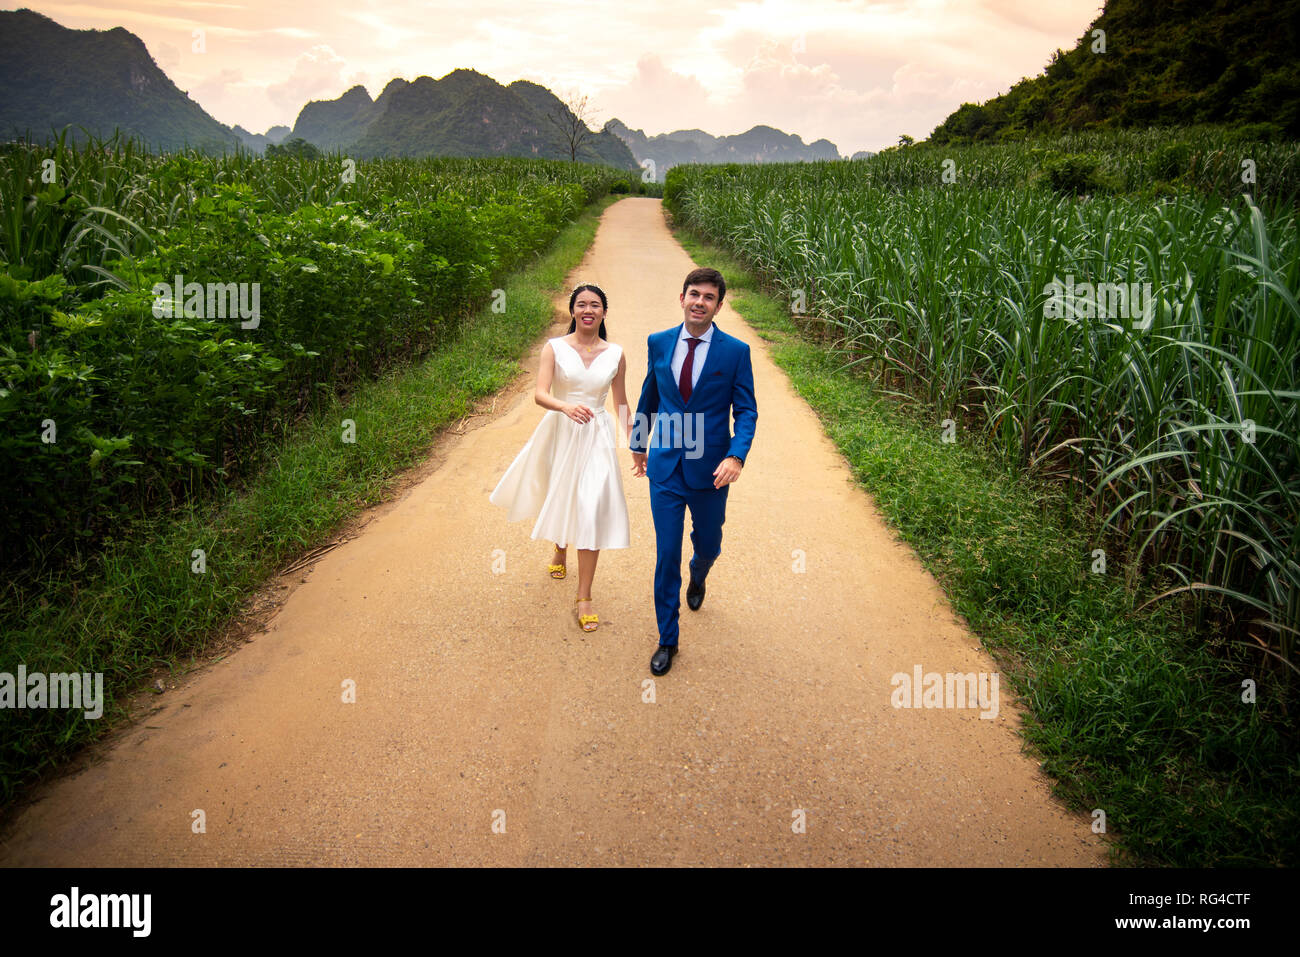 Heureux couple s'amusant dans un champ de canne à sucre au coucher du soleil Banque D'Images